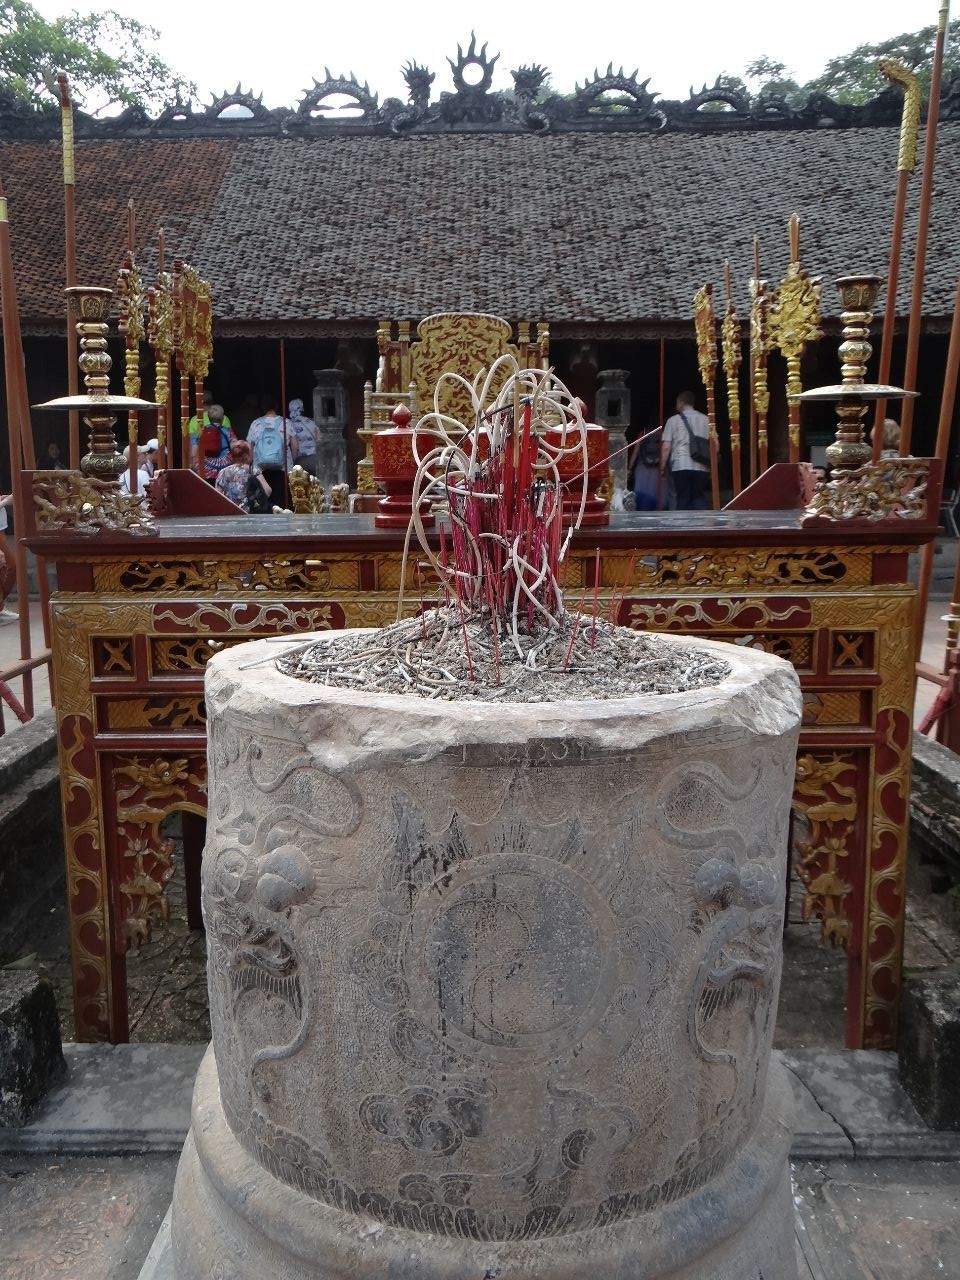 Храмовый комплекс Бай Динь расположен в горном районе северной провинции Вьетнама – Ниньбинь.  - Фотоотчет Вьетнам 2019. Часть 5.